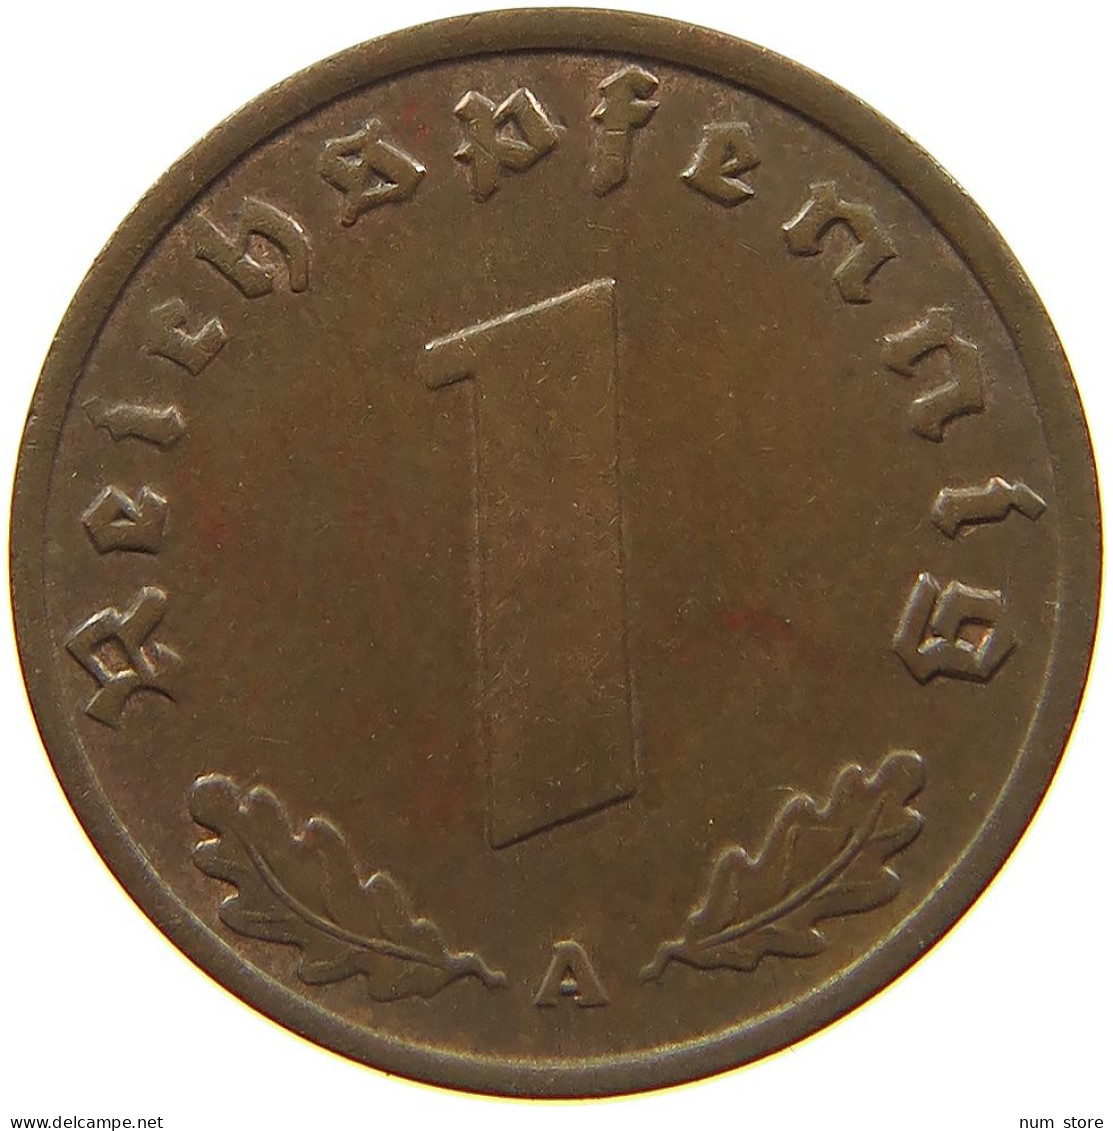 GERMANY 1 REICHSPFENNIG 1937 A #s091 1187 - 1 Reichspfennig